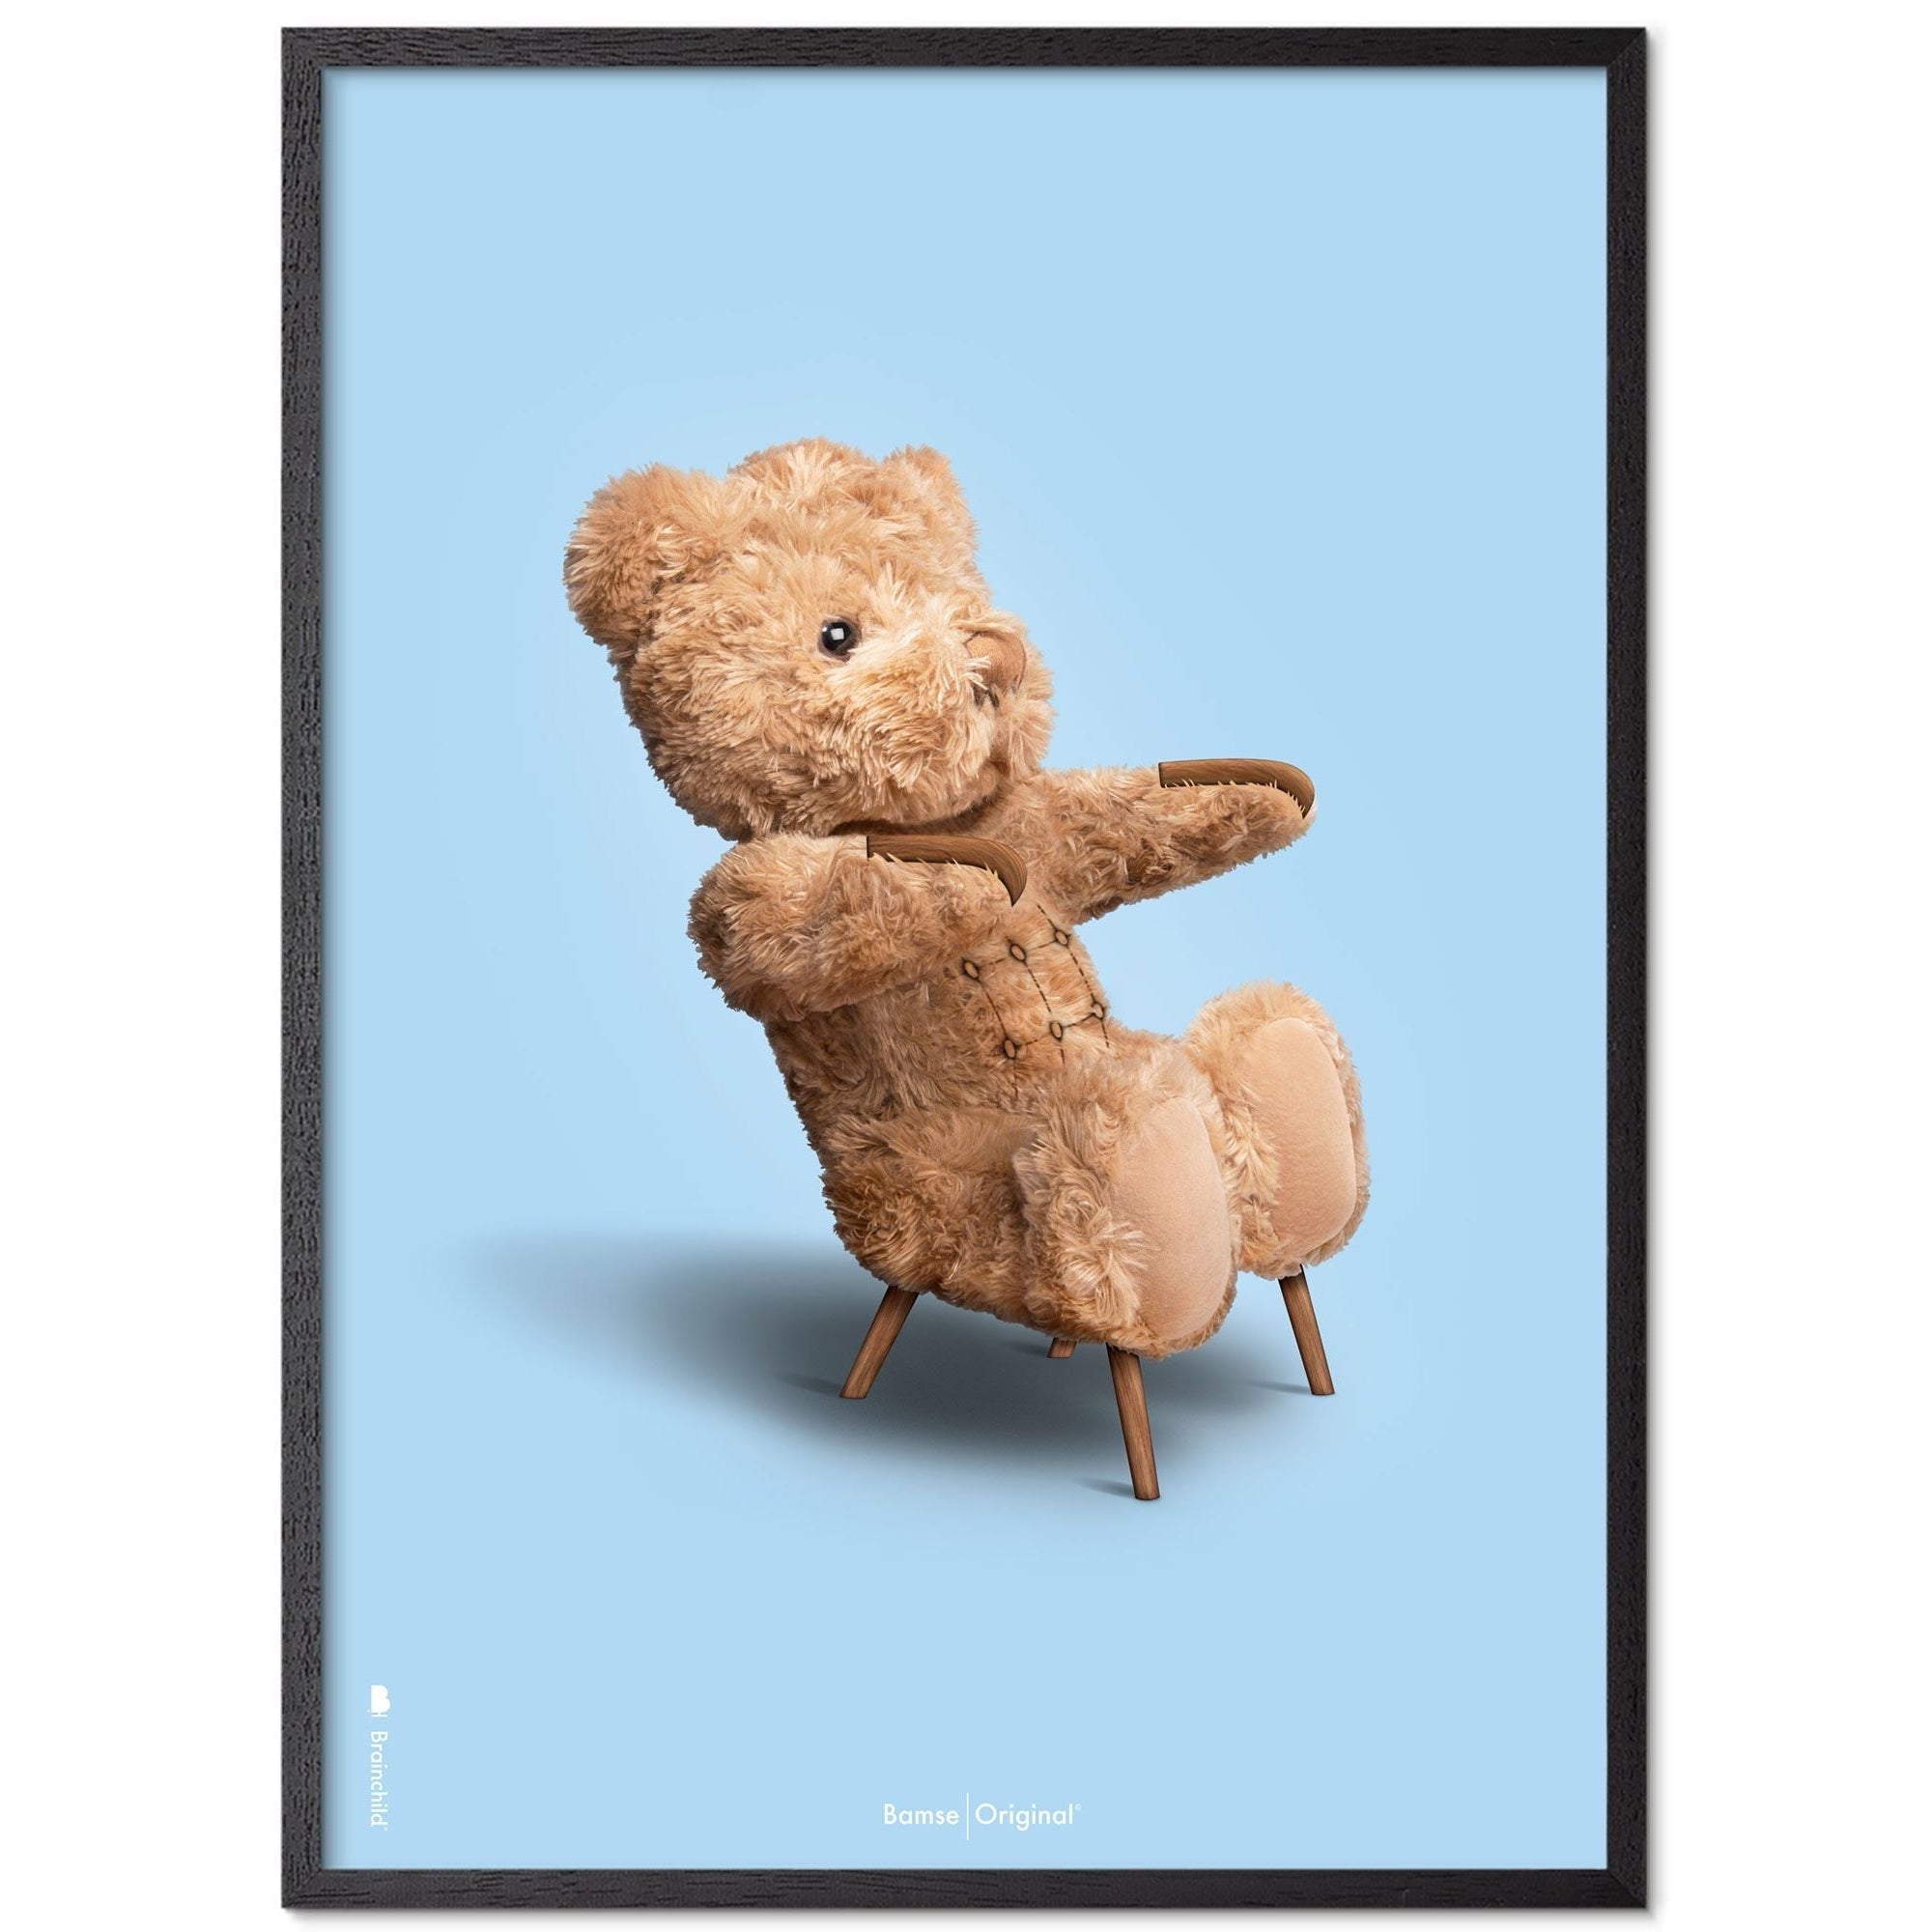 Brainchild Teddybeer klassiek posterframe in zwart gelakt hout a5, lichtblauwe achtergrond